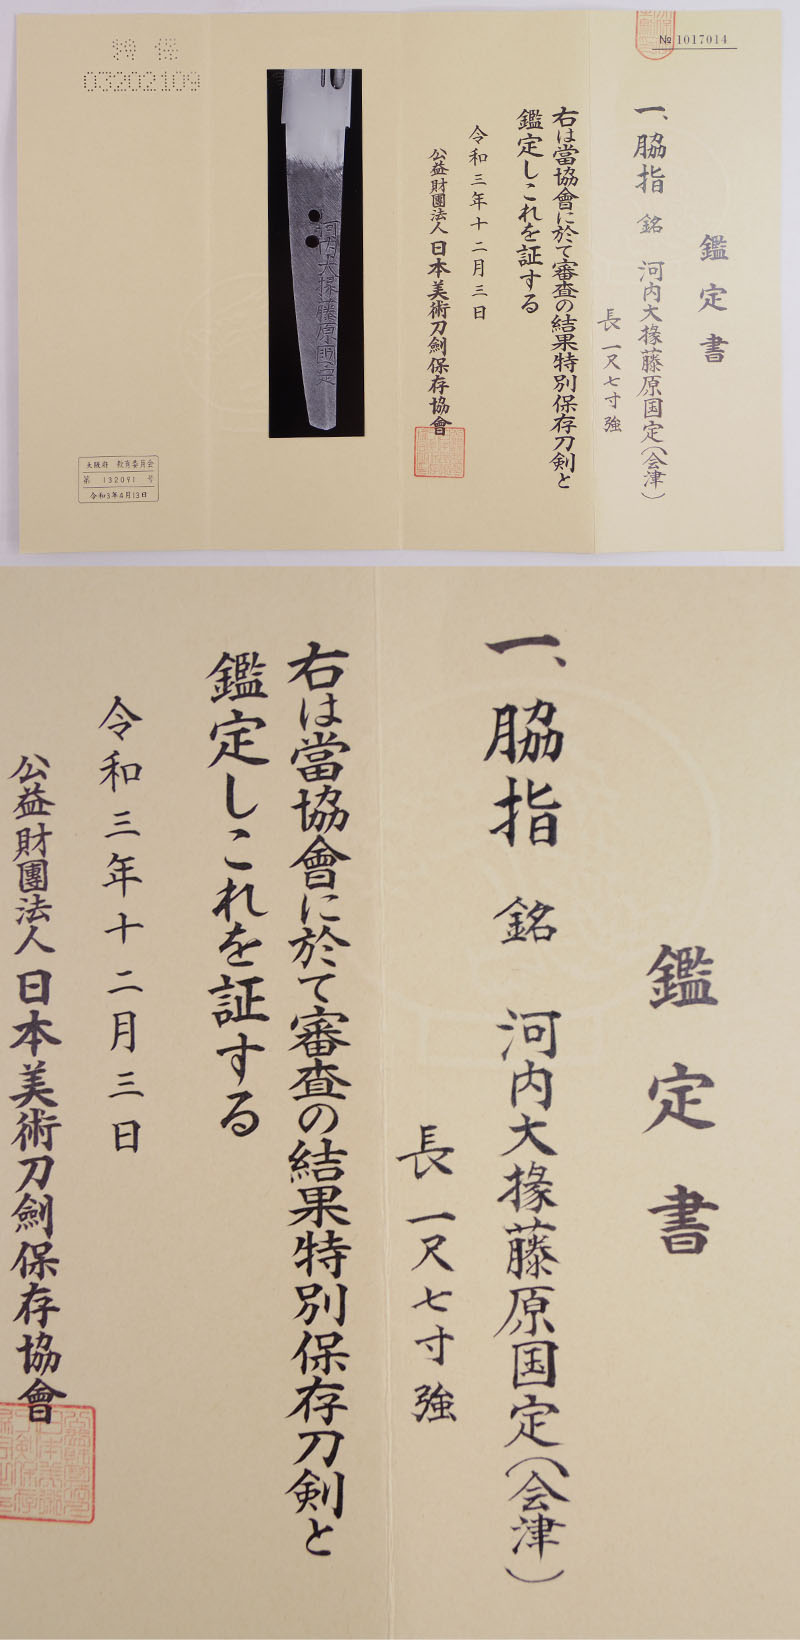 脇差　河内大掾藤原国定(陸奥会津) (業物) Picture of Certificate